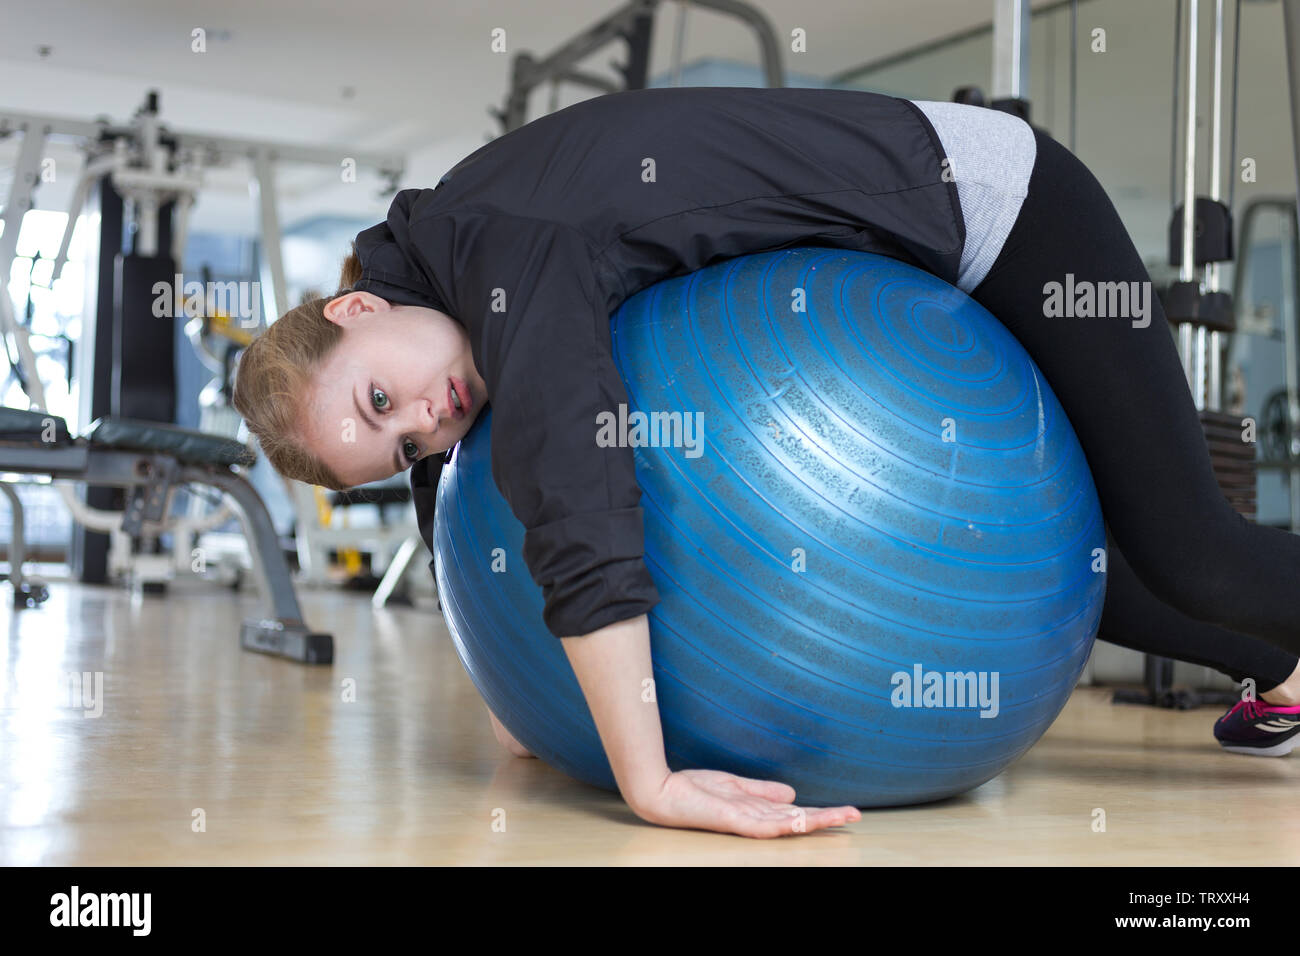 Junge kaukasier liegende Frau auf Blau Gymnastikball suchen erschöpft, müde, gelangweilt und müde an der Turnhalle Stockfoto